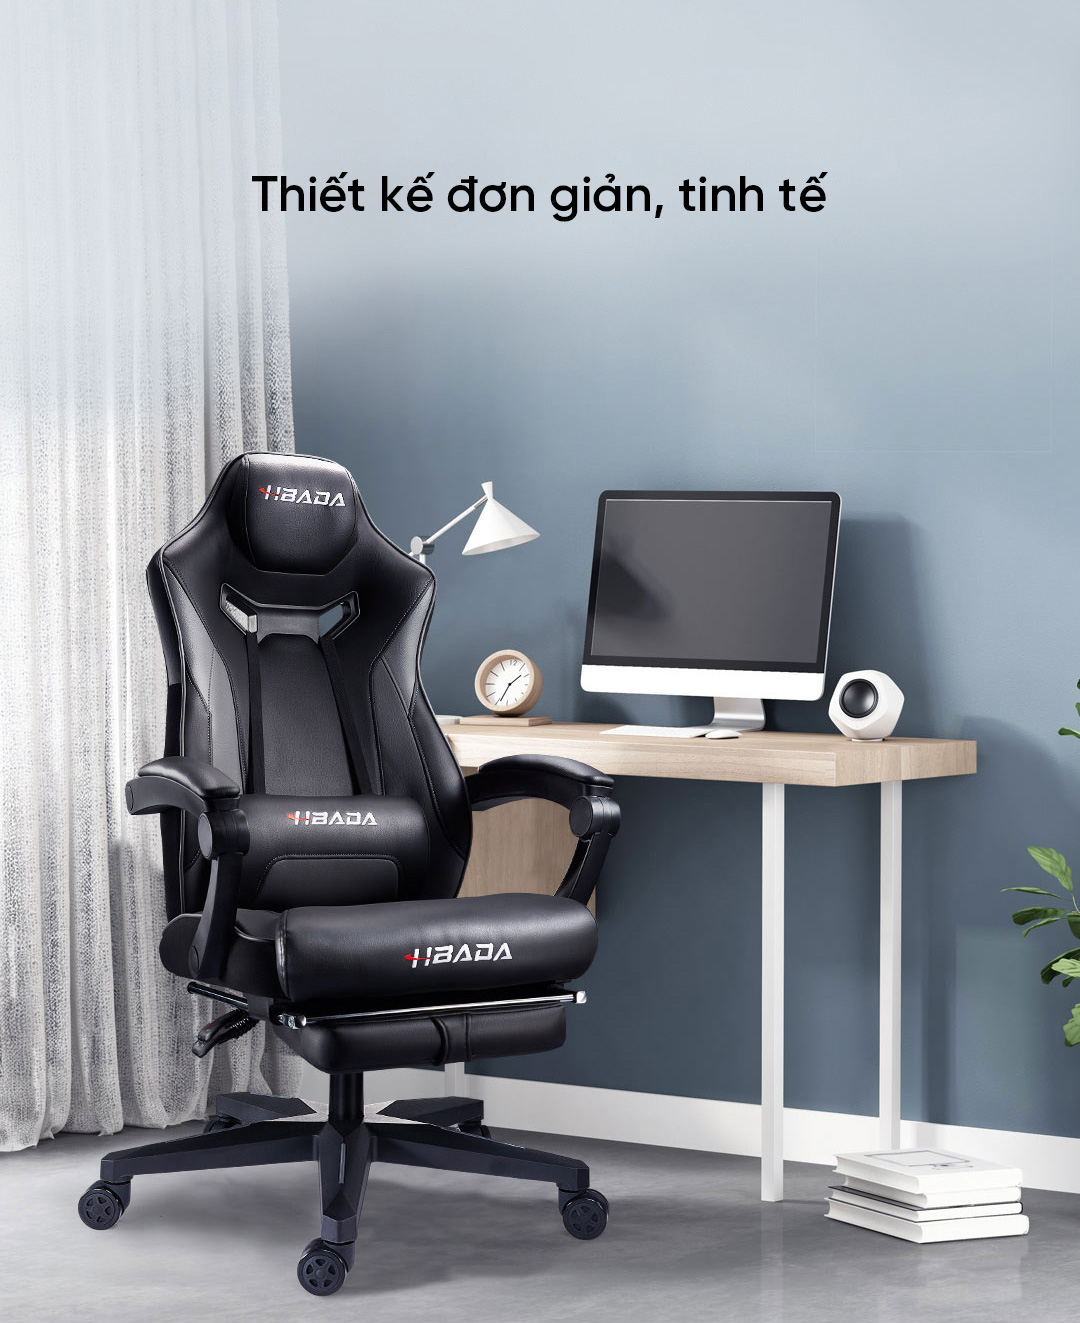 Thiết kế đơn giản, tinh tế. Vừa có thể trở thành chiếc ghế gaming hoặc cũng có thể trở thành chiếc ghế cho văn phòng rất tiện lợi